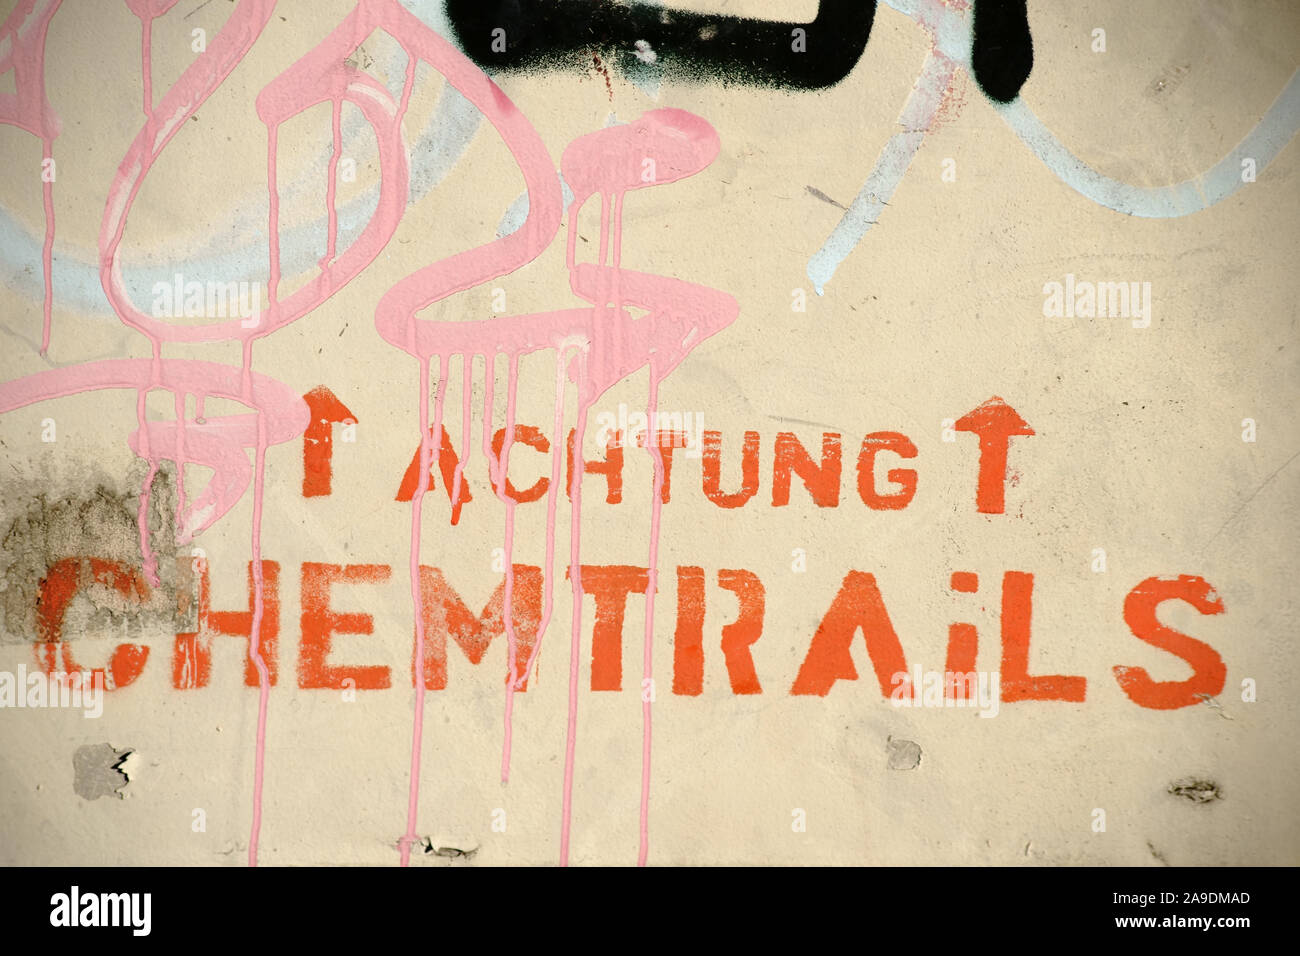 Die Verschwörungstheorie Vorsicht chemtrails gesprüht an einer Wand. Stockfoto